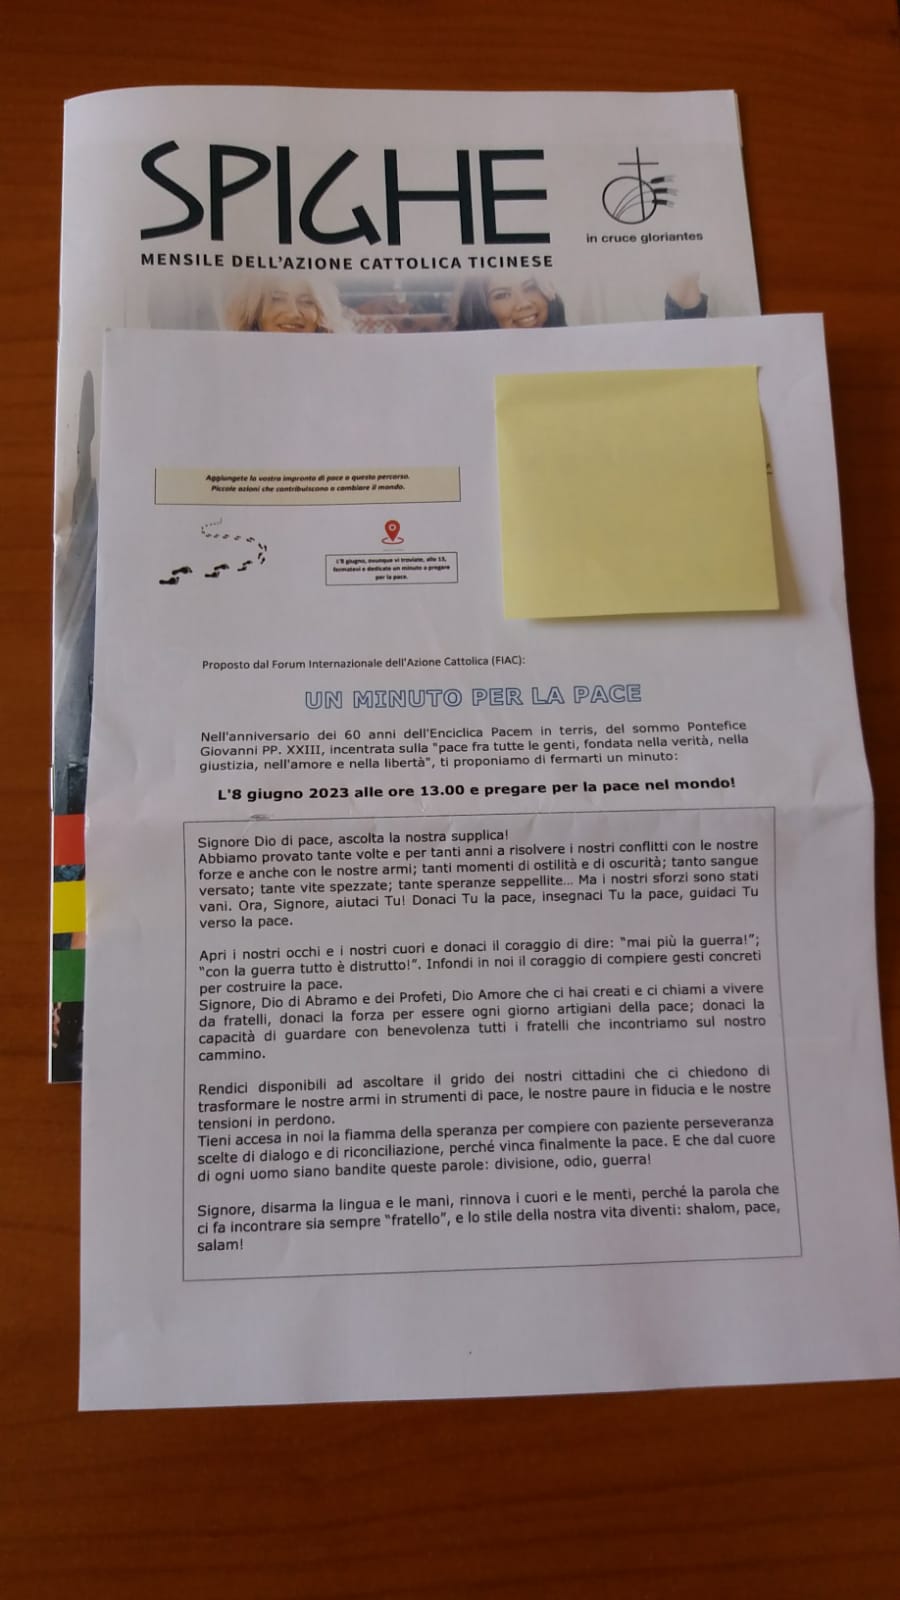 AC Svizzera Ticino. Lettera invito allegata al mensile associativo "Spighe"